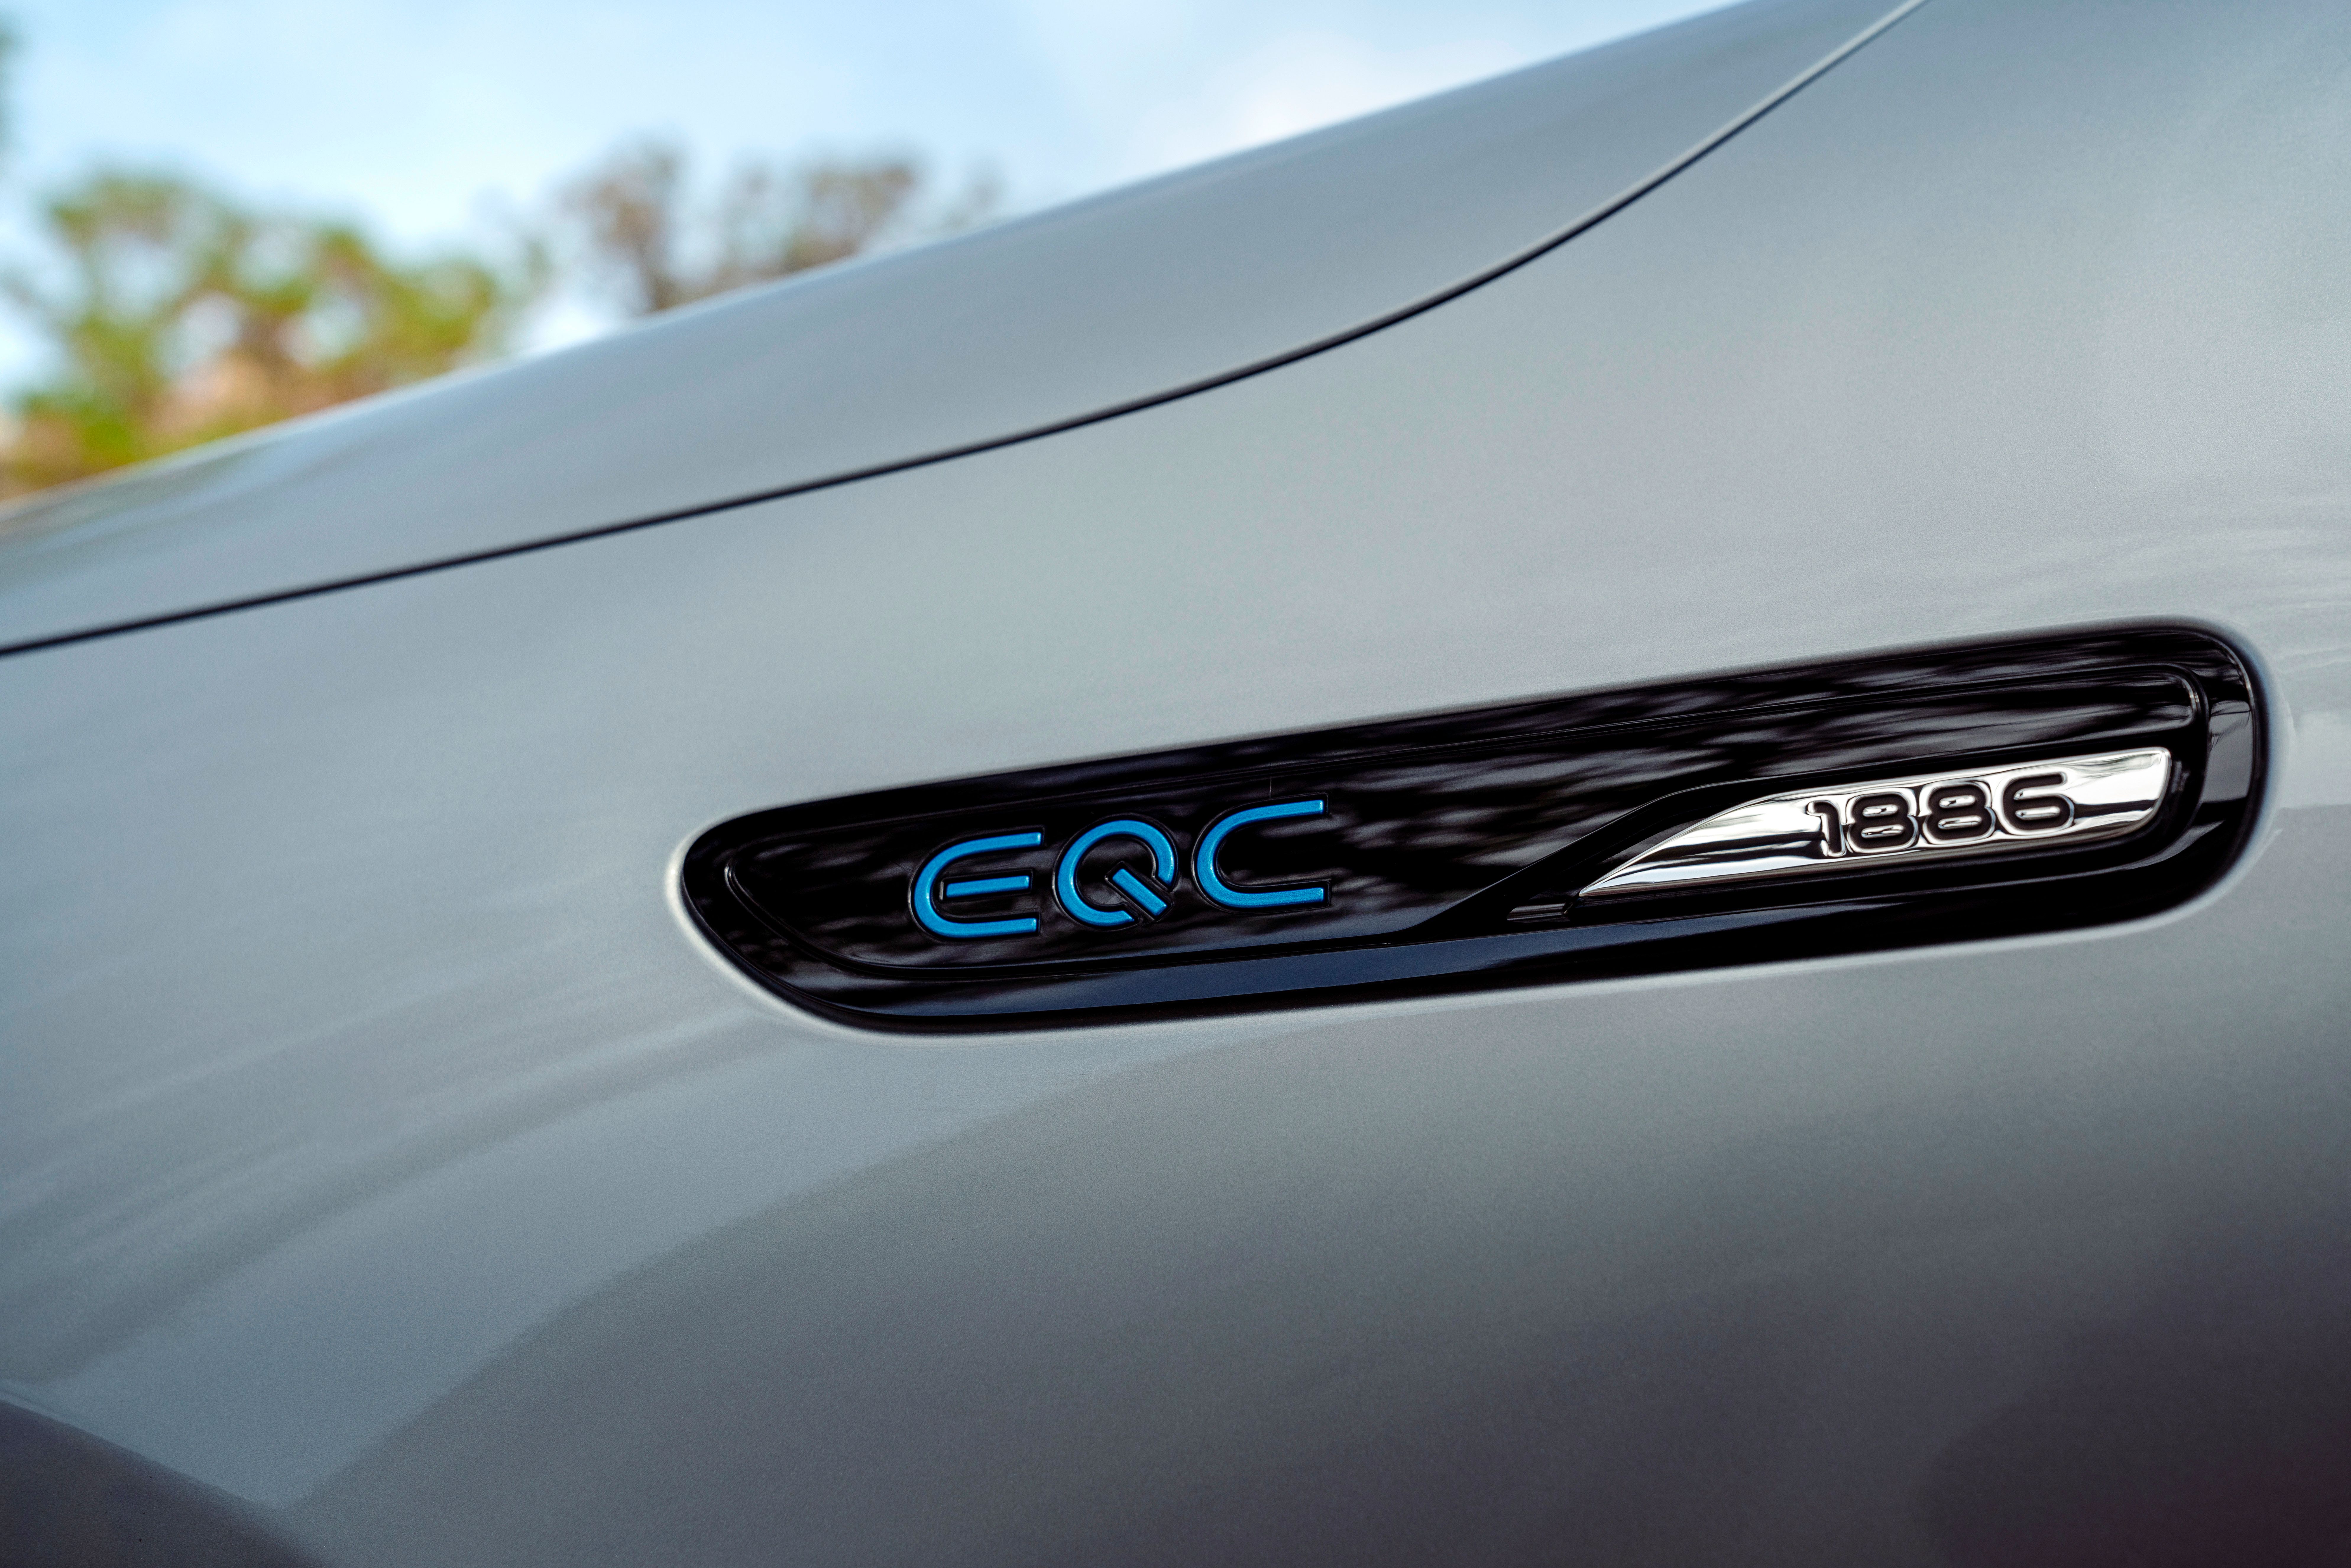 2019 Mercedes EQC 1886 Edition